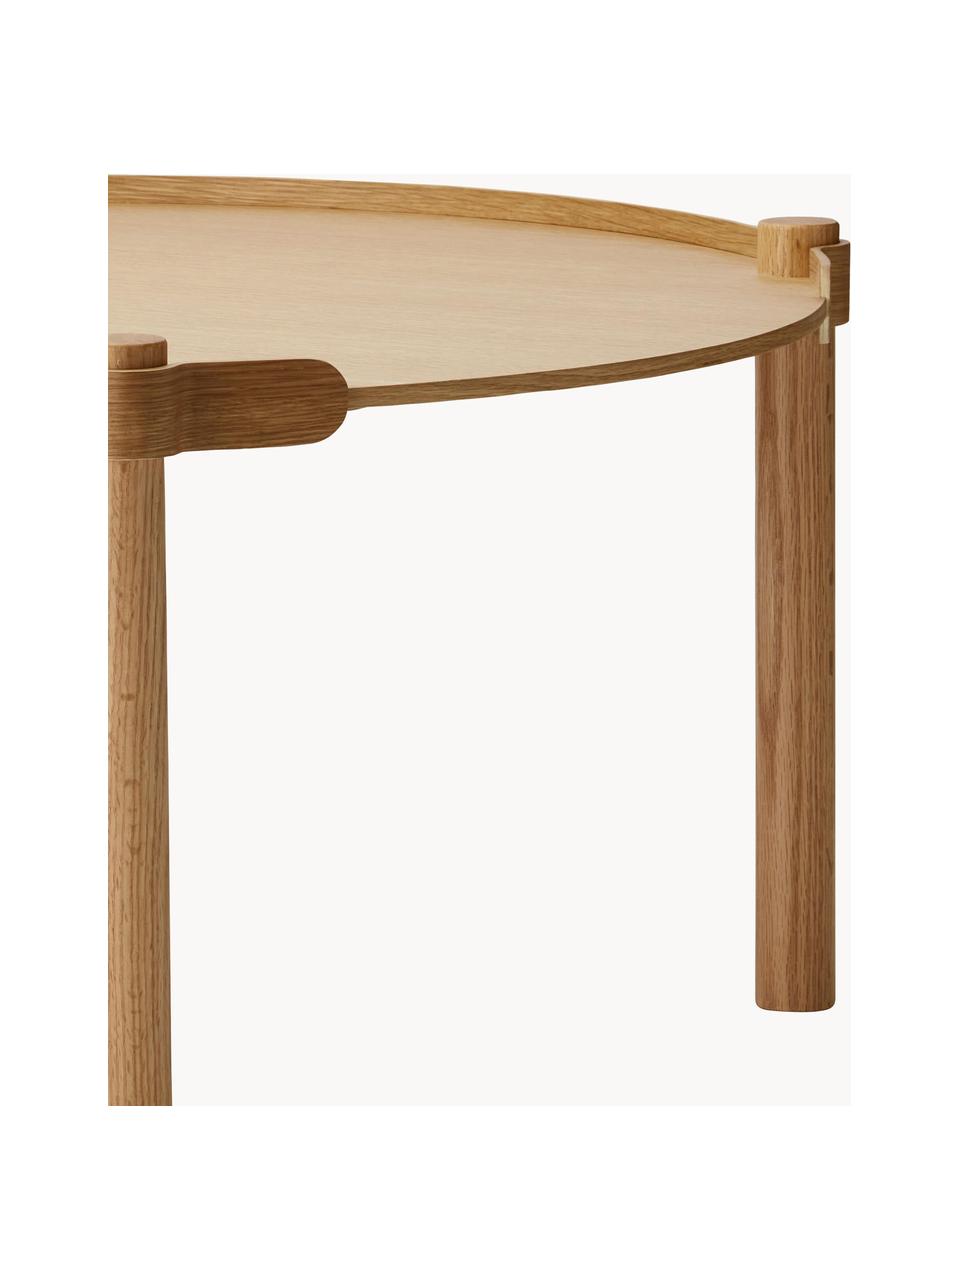 Table d'appoint ovale en chêne Woody, Bois de chêne

Ce produit est fabriqué à partir de bois certifié FSC® issu d'une exploitation durable, Bois de chêne, Ø 80 cm